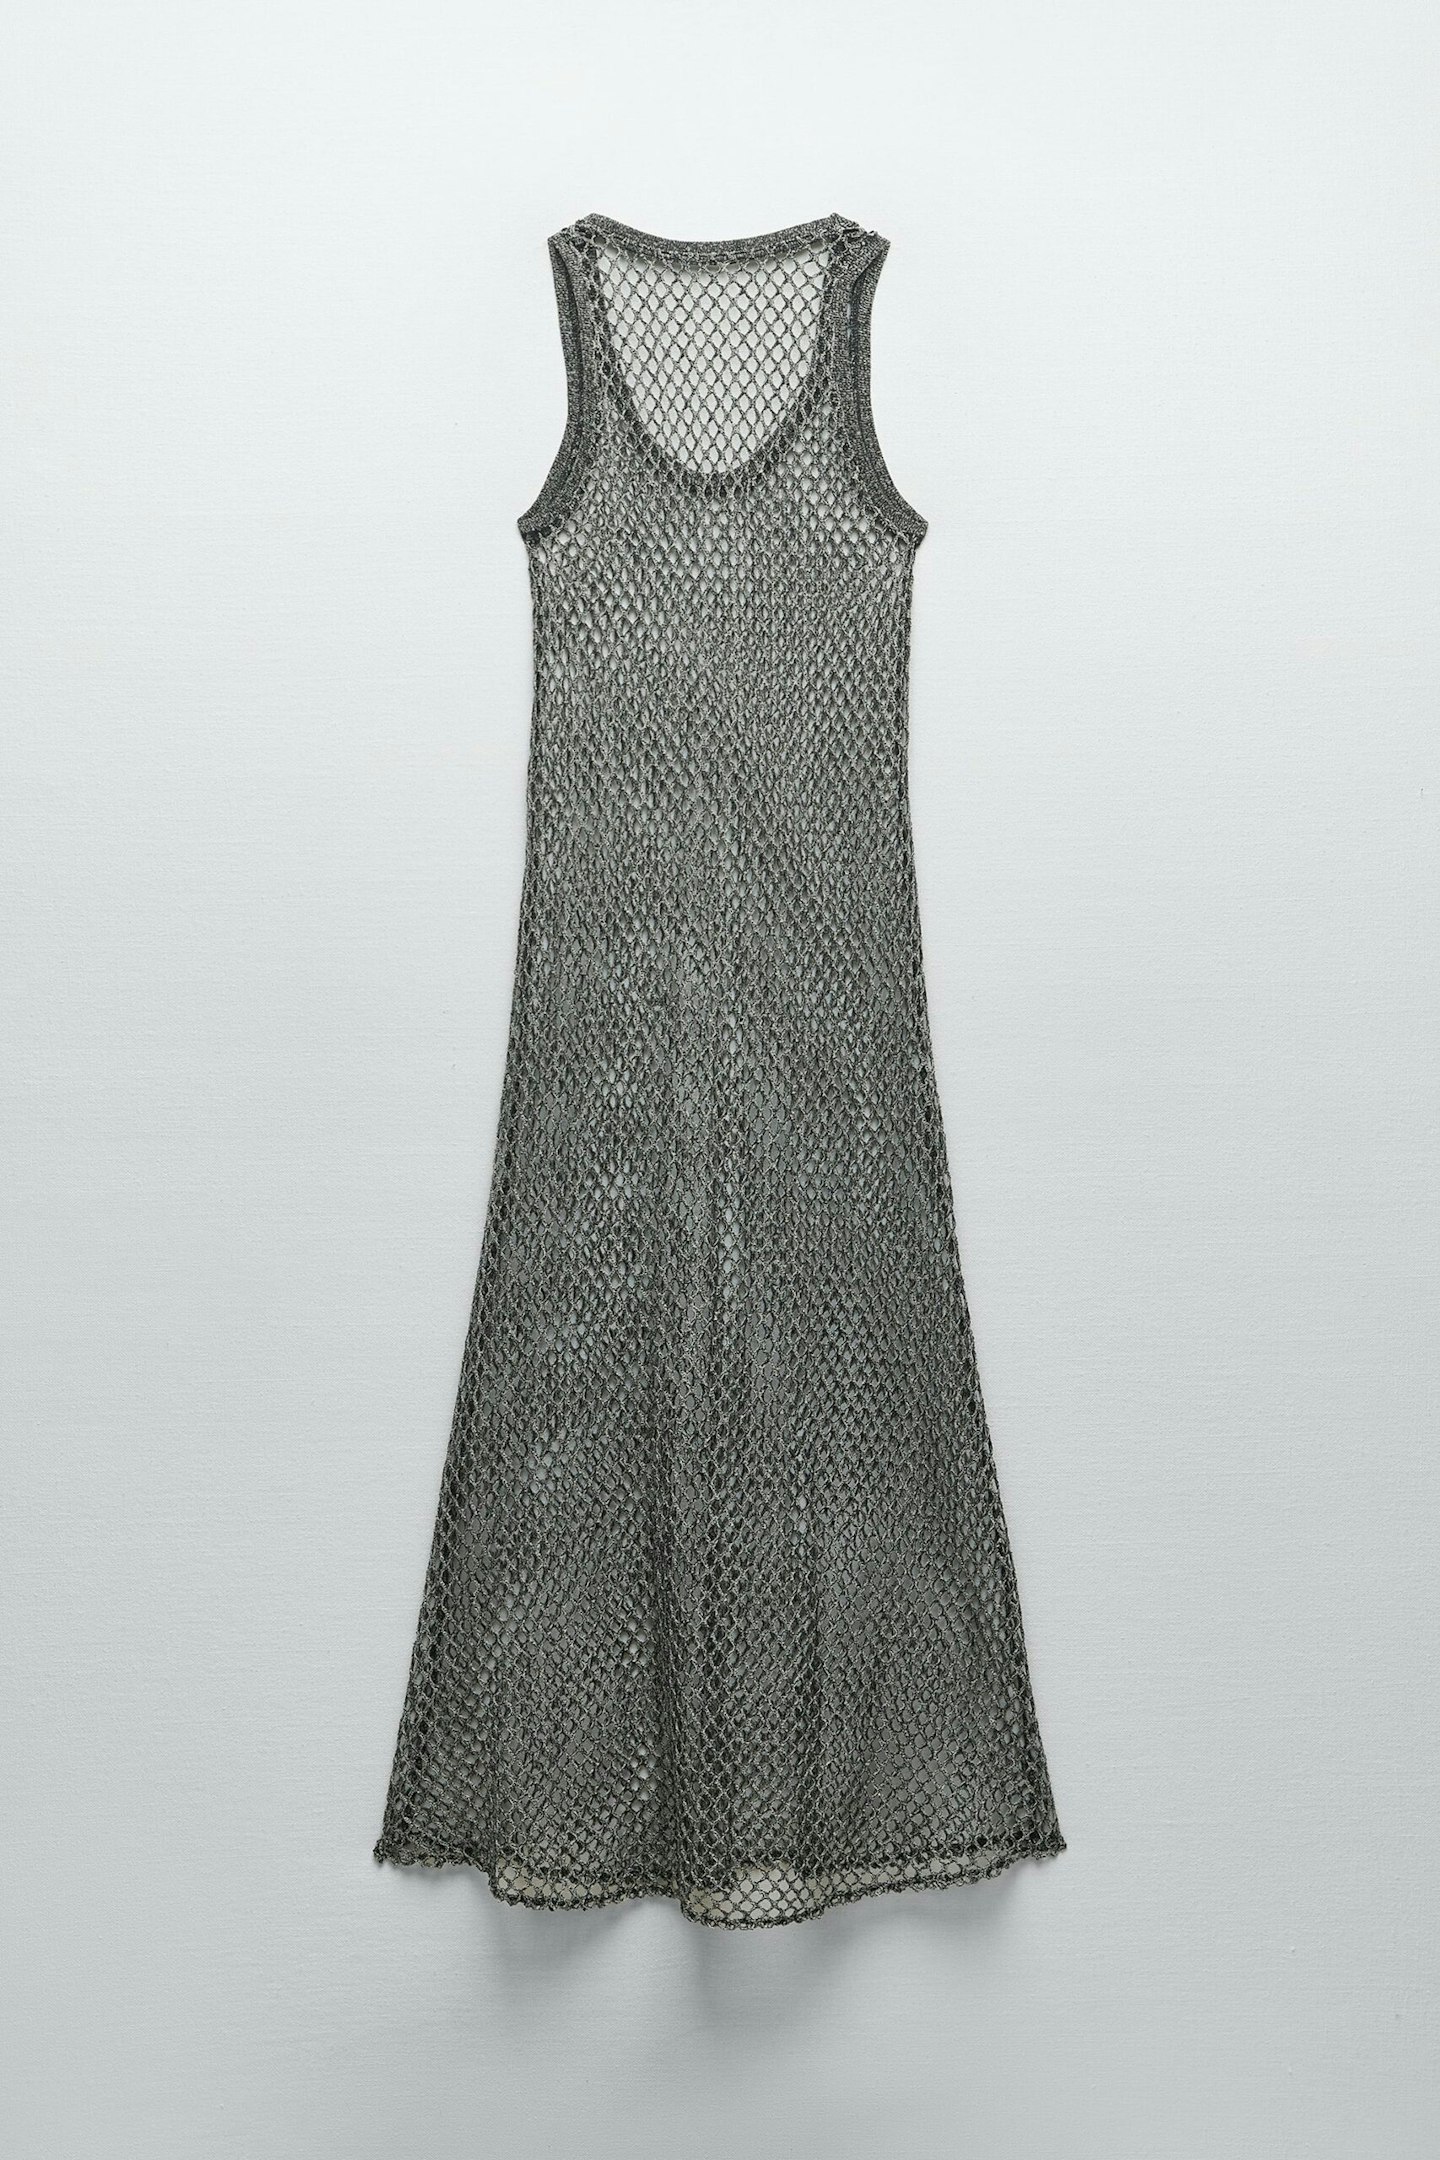 Zara, Long Mesh Dress